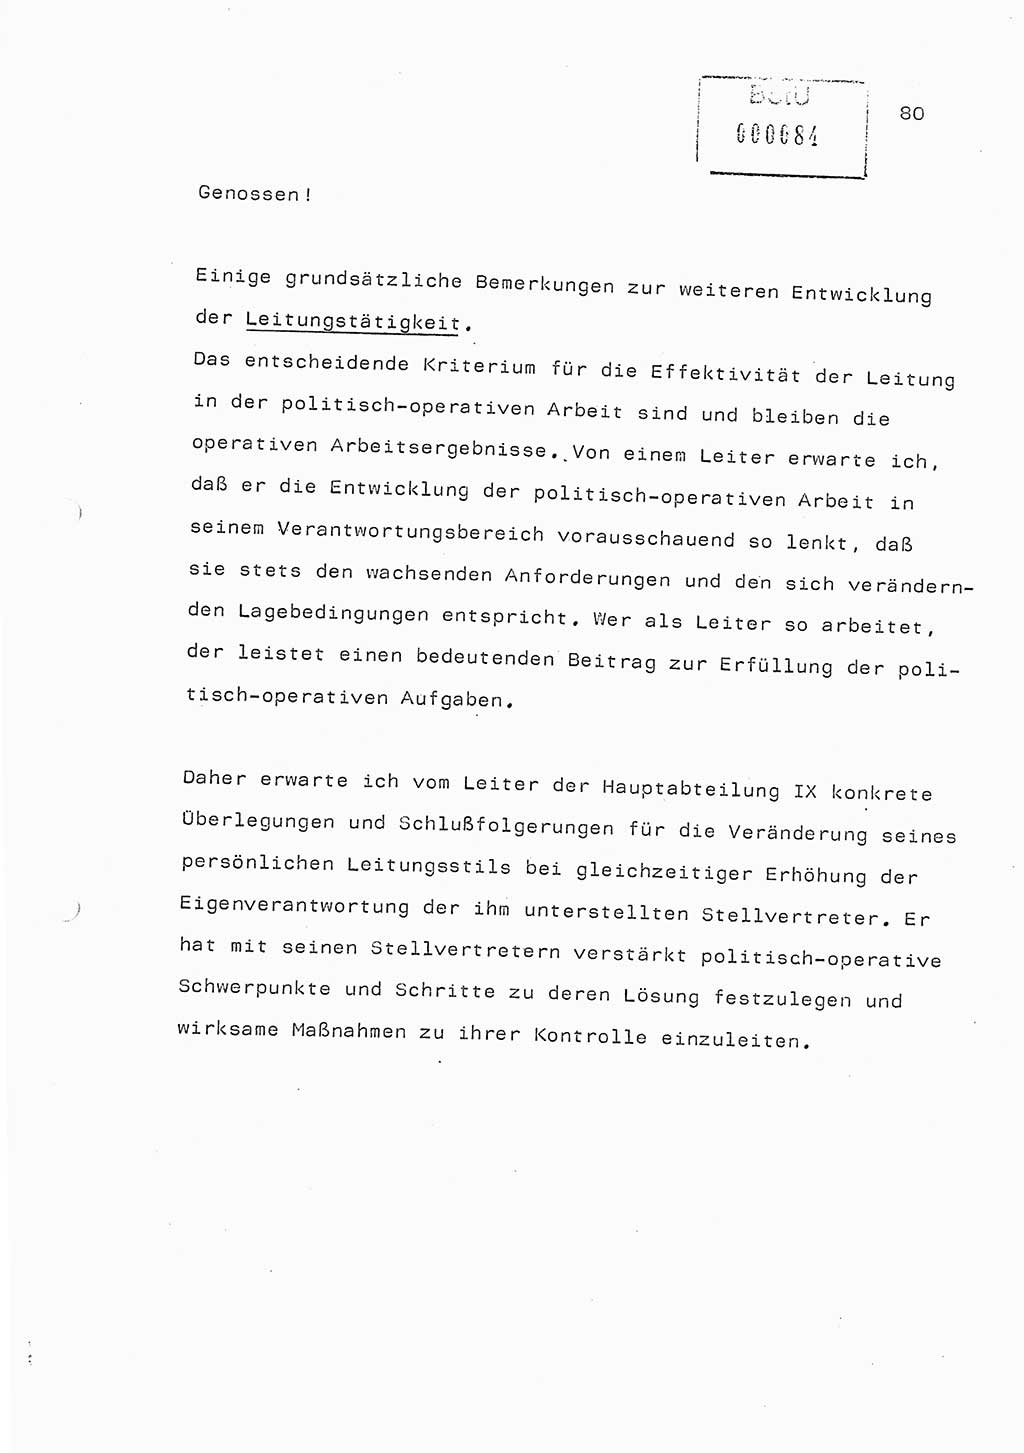 Referat (Generaloberst Erich Mielke) auf der Zentralen Dienstkonferenz am 24.5.1979 [Ministerium für Staatssicherheit (MfS), Deutsche Demokratische Republik (DDR), Der Minister], Berlin 1979, Seite 80 (Ref. DK DDR MfS Min. /79 1979, S. 80)